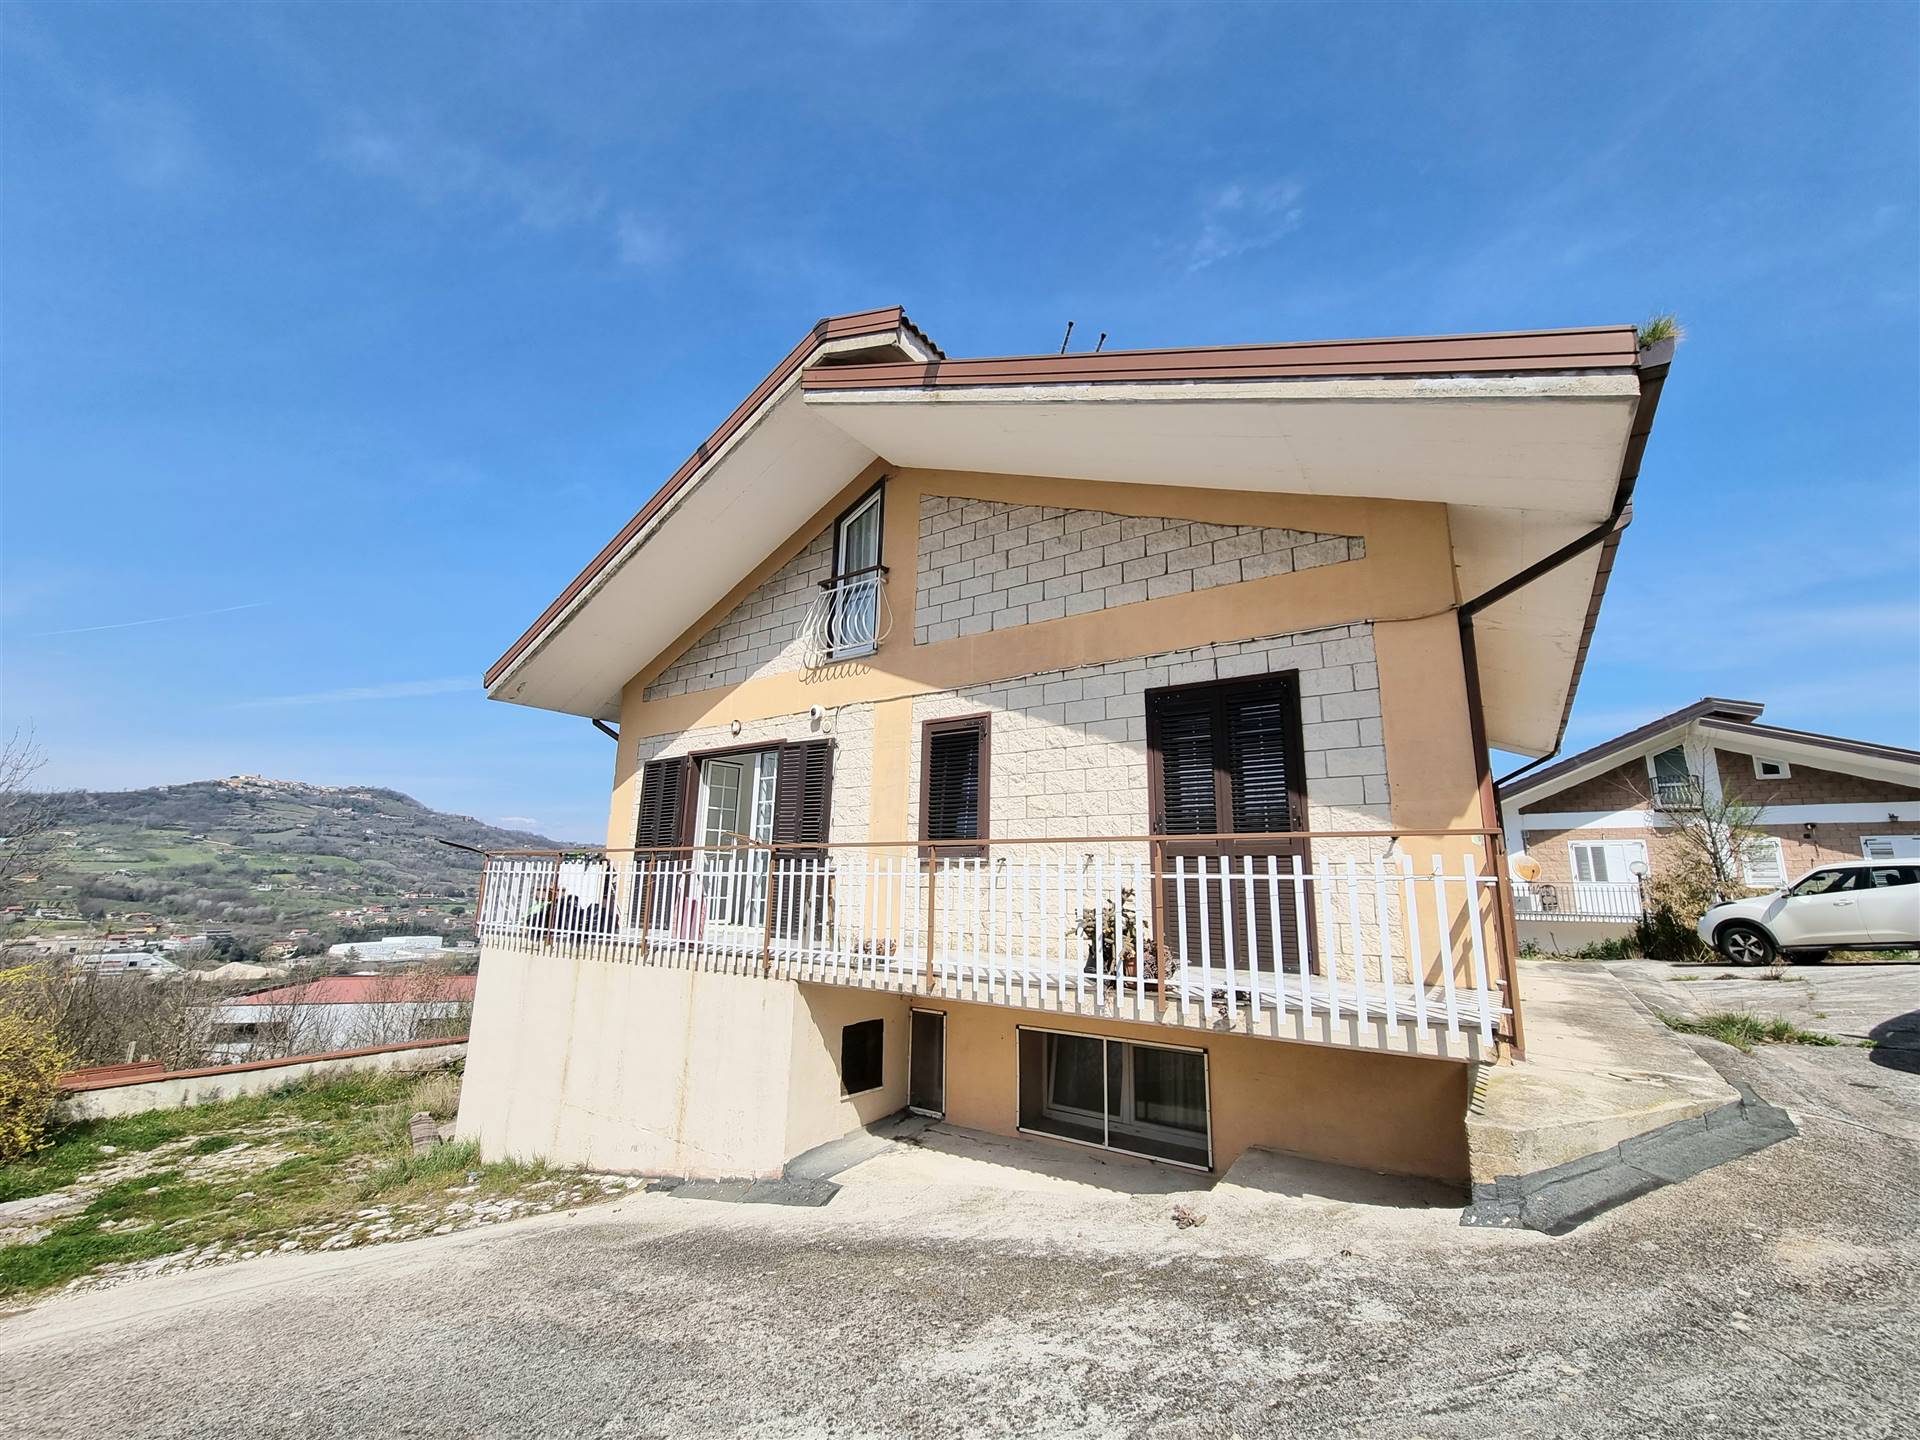 Villa in vendita a Manocalzati, 8 locali, prezzo € 180.000 | CambioCasa.it